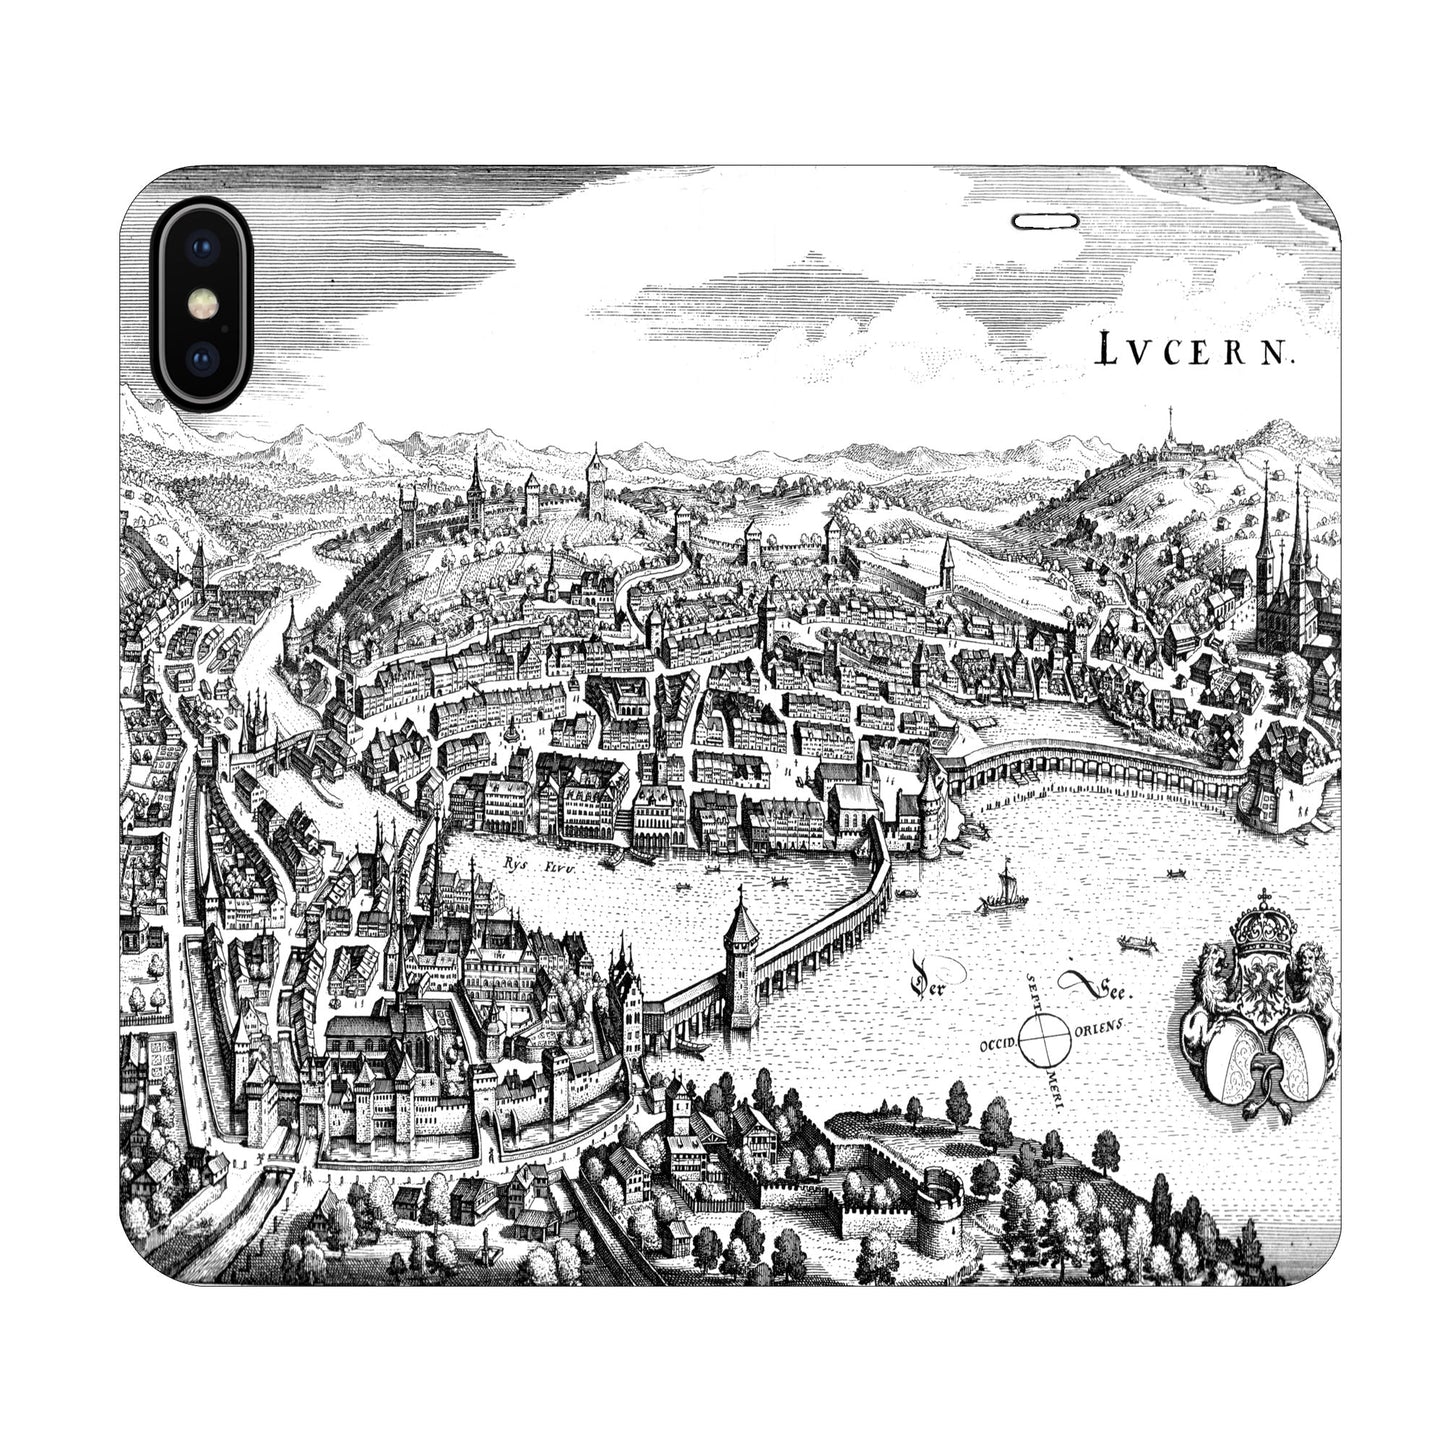 Luzern Merian Panorama Case für iPhone X/XS